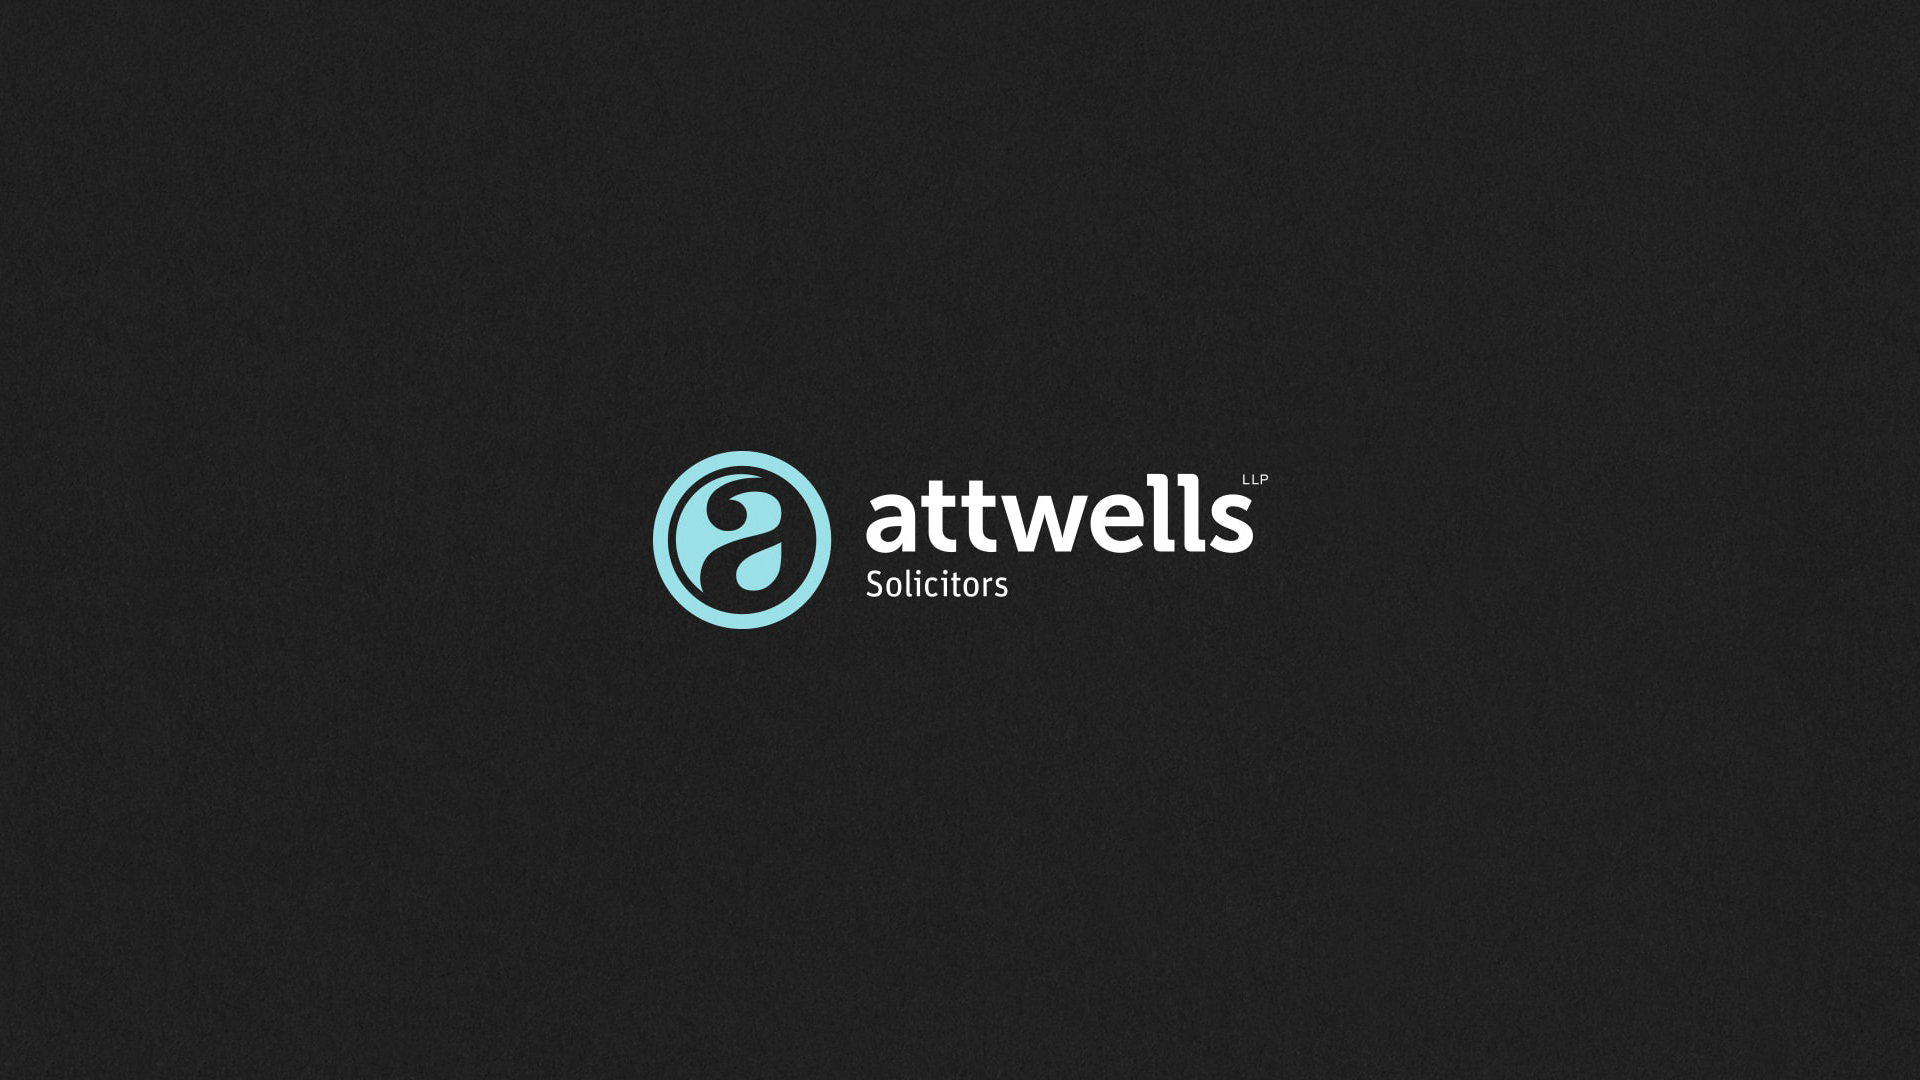 Attwells brand identity